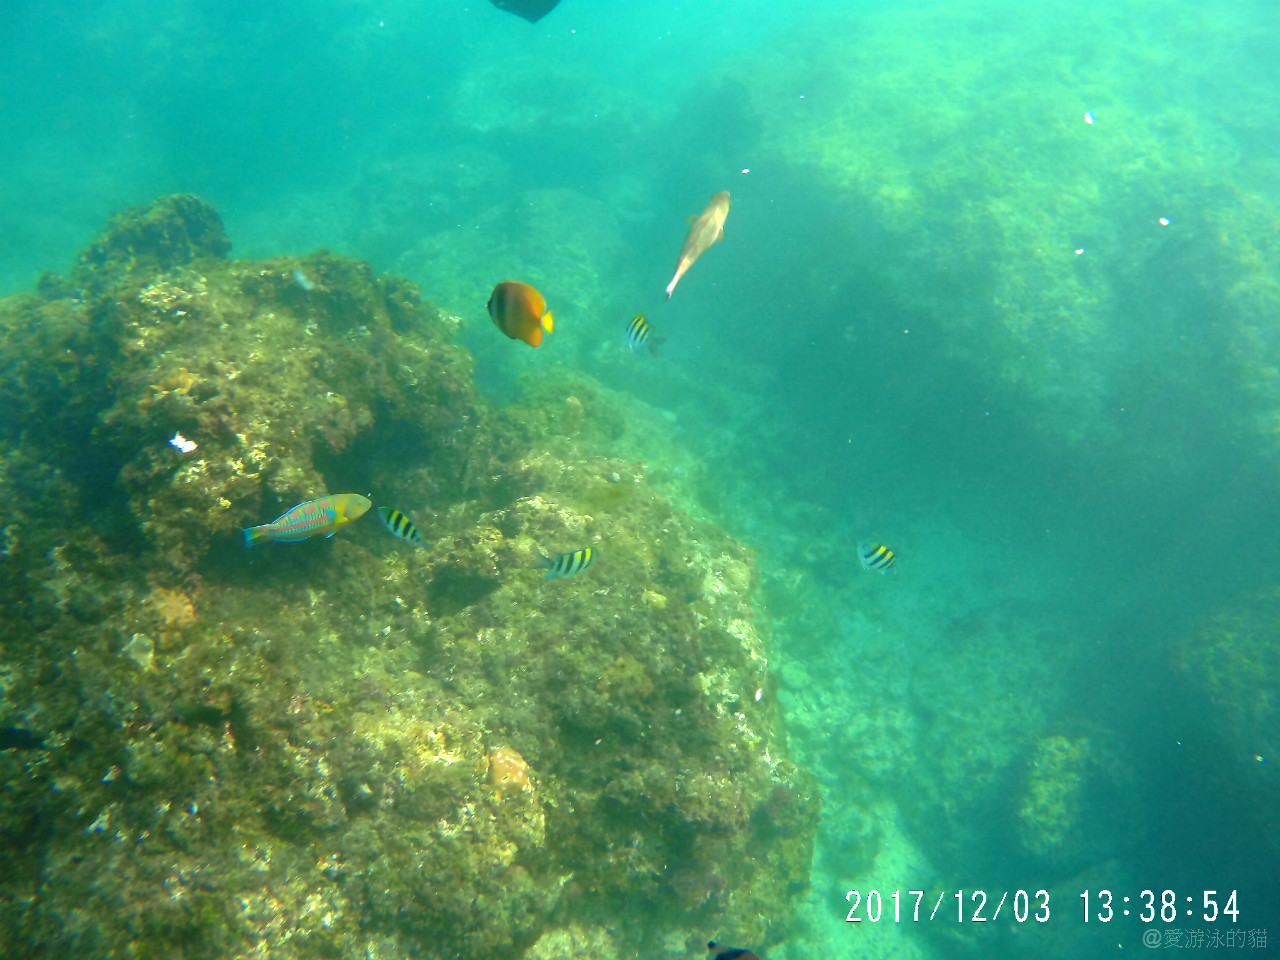 小琉球花瓶岩浮潛-與綠蠵龜同遊